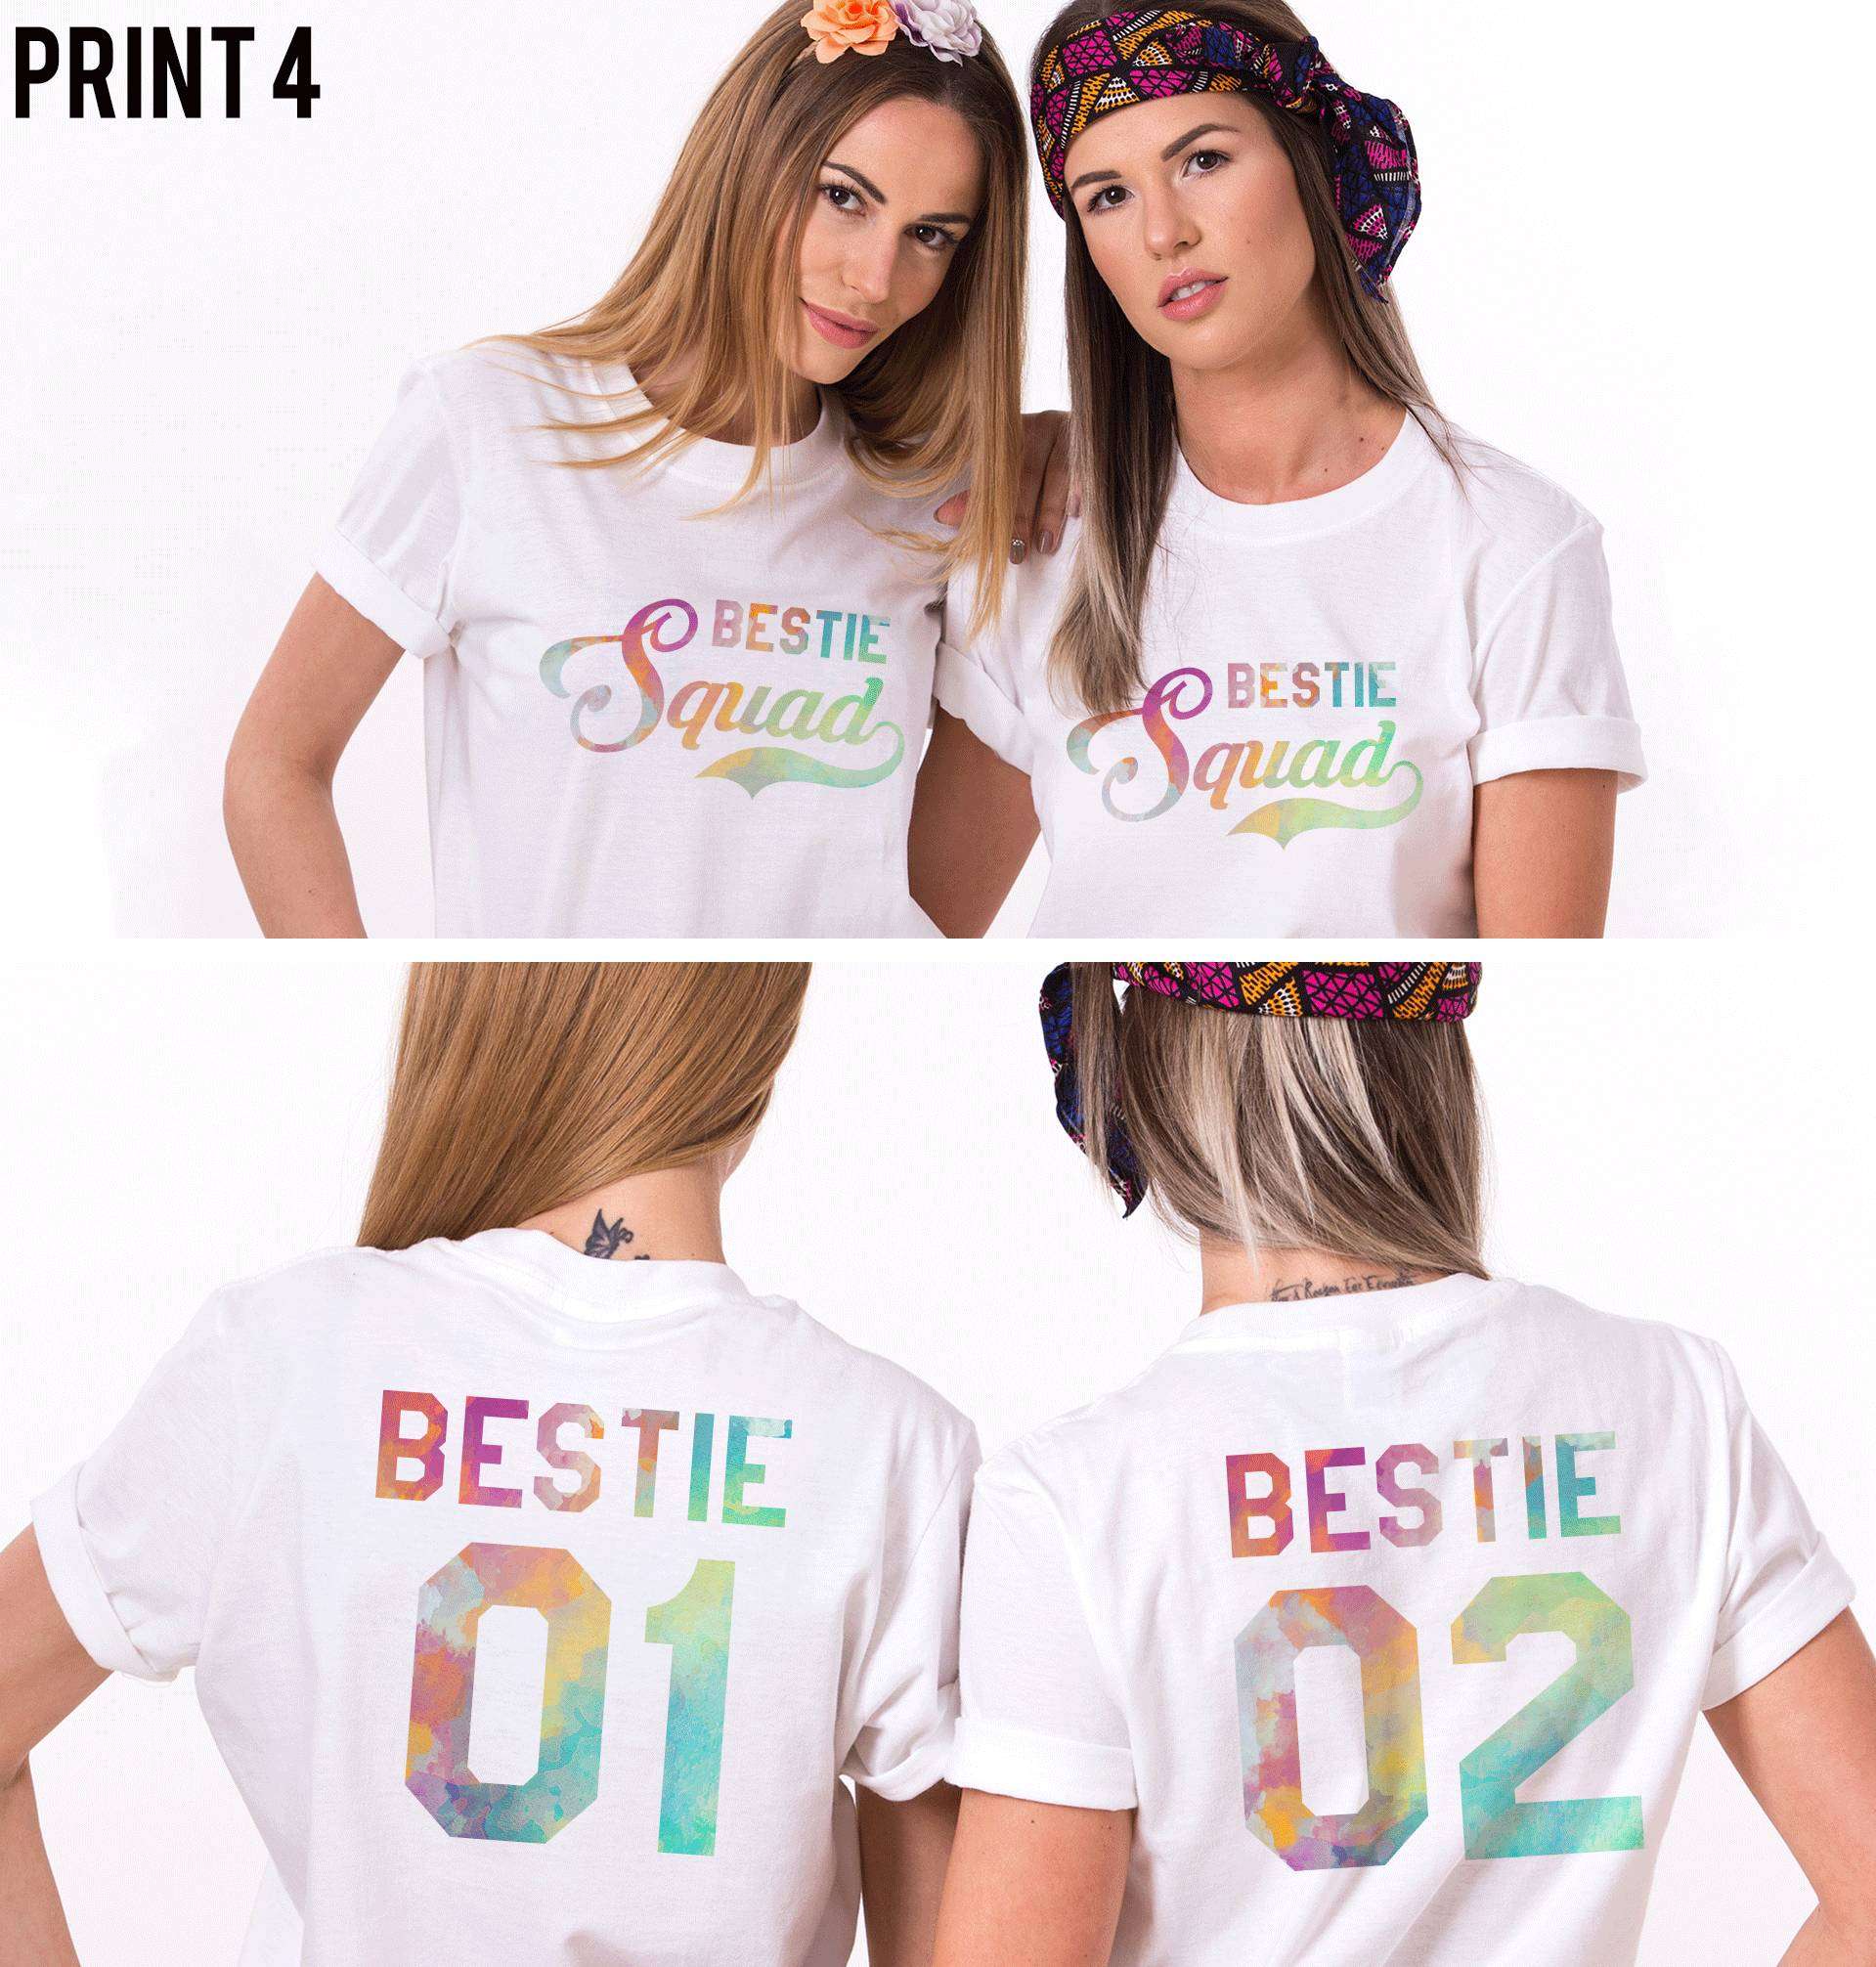 kun Meander forræderi Bestie Squad Shirts, Bestie 01, Matching Best Friends Shirts